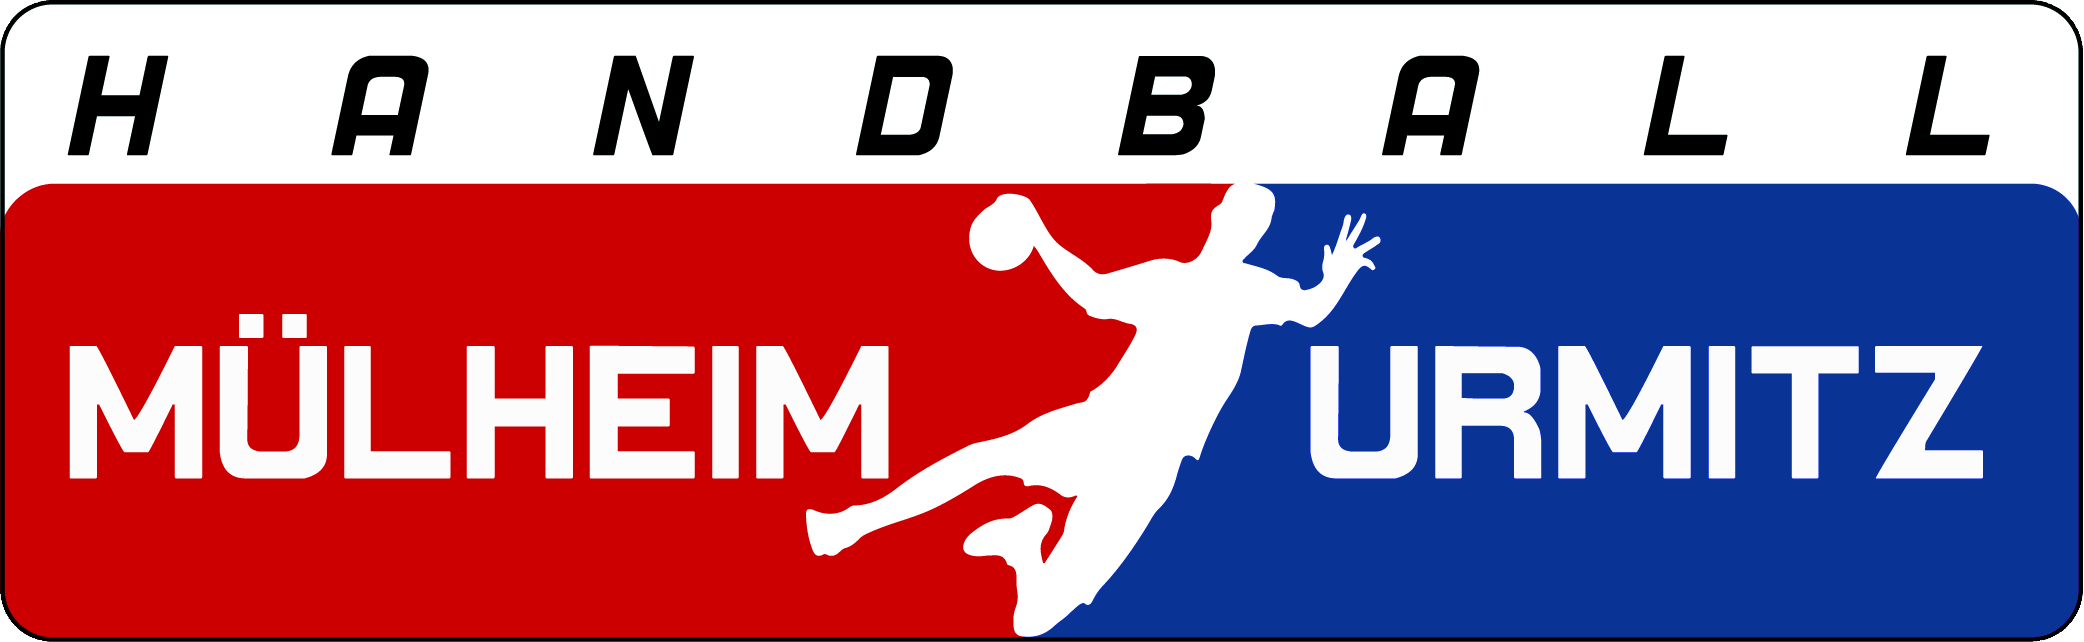 Logo Handball Mülheim-Urmitz